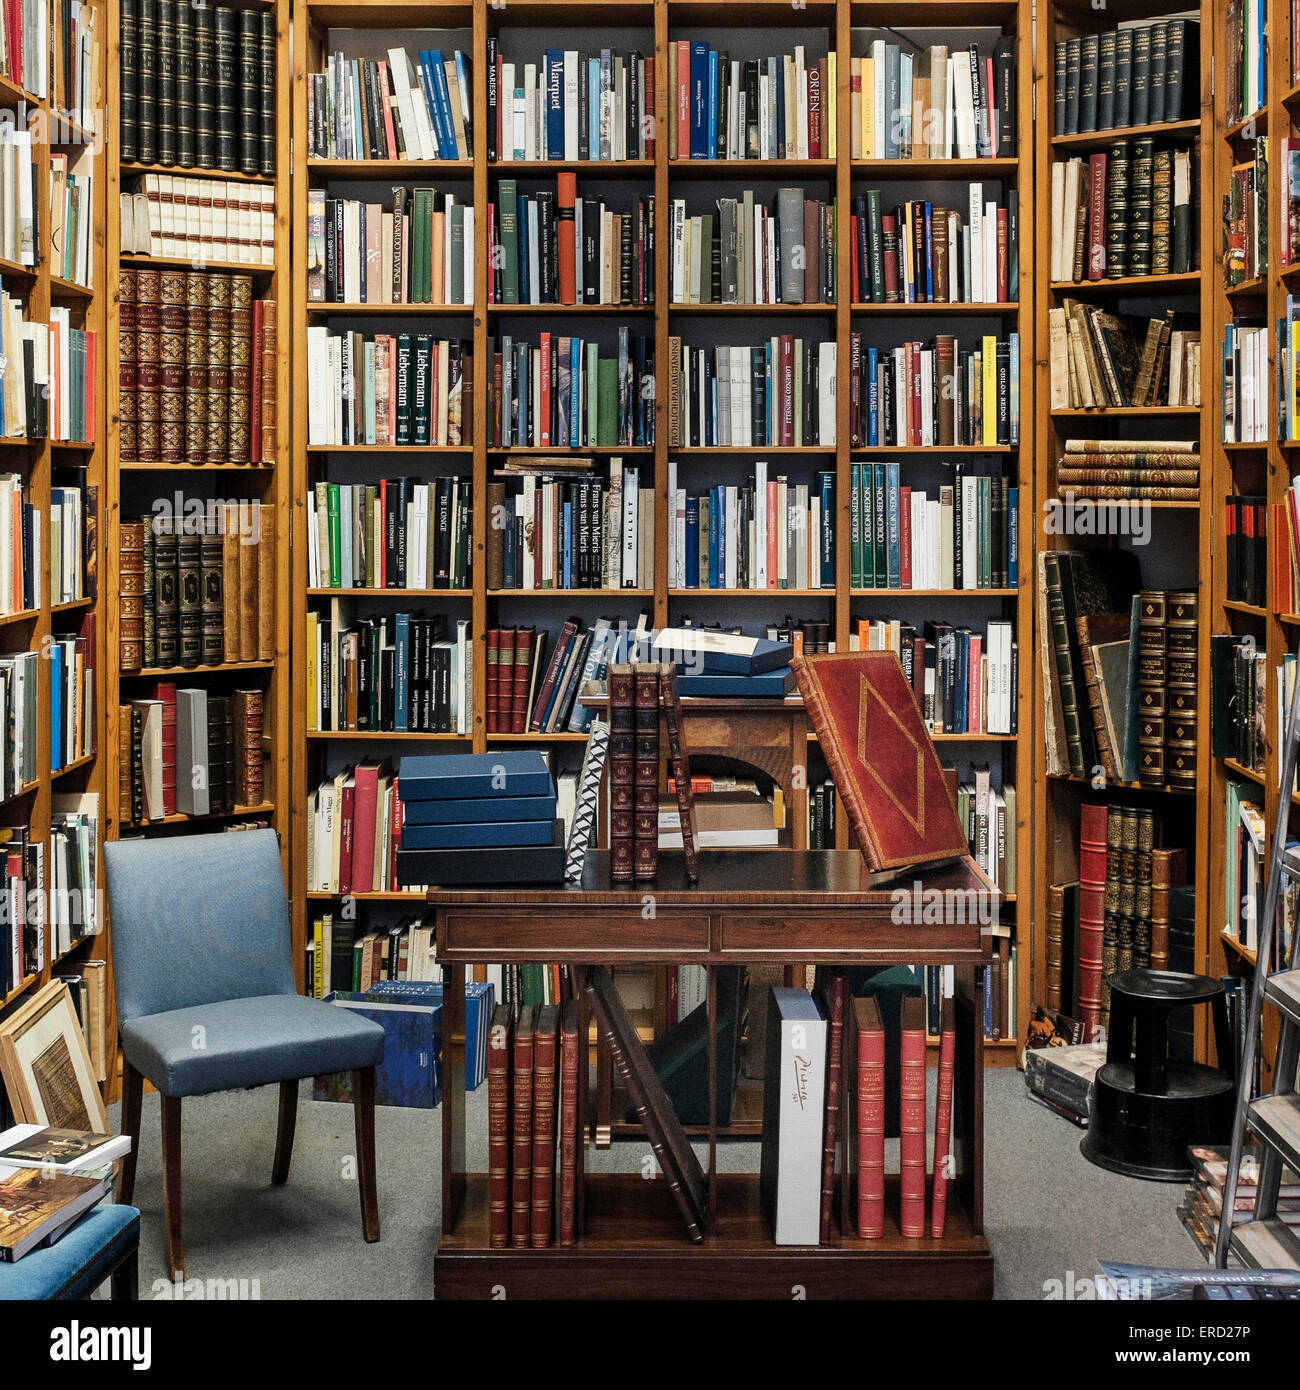 Libreria di casa immagini e fotografie stock ad alta risoluzione - Alamy